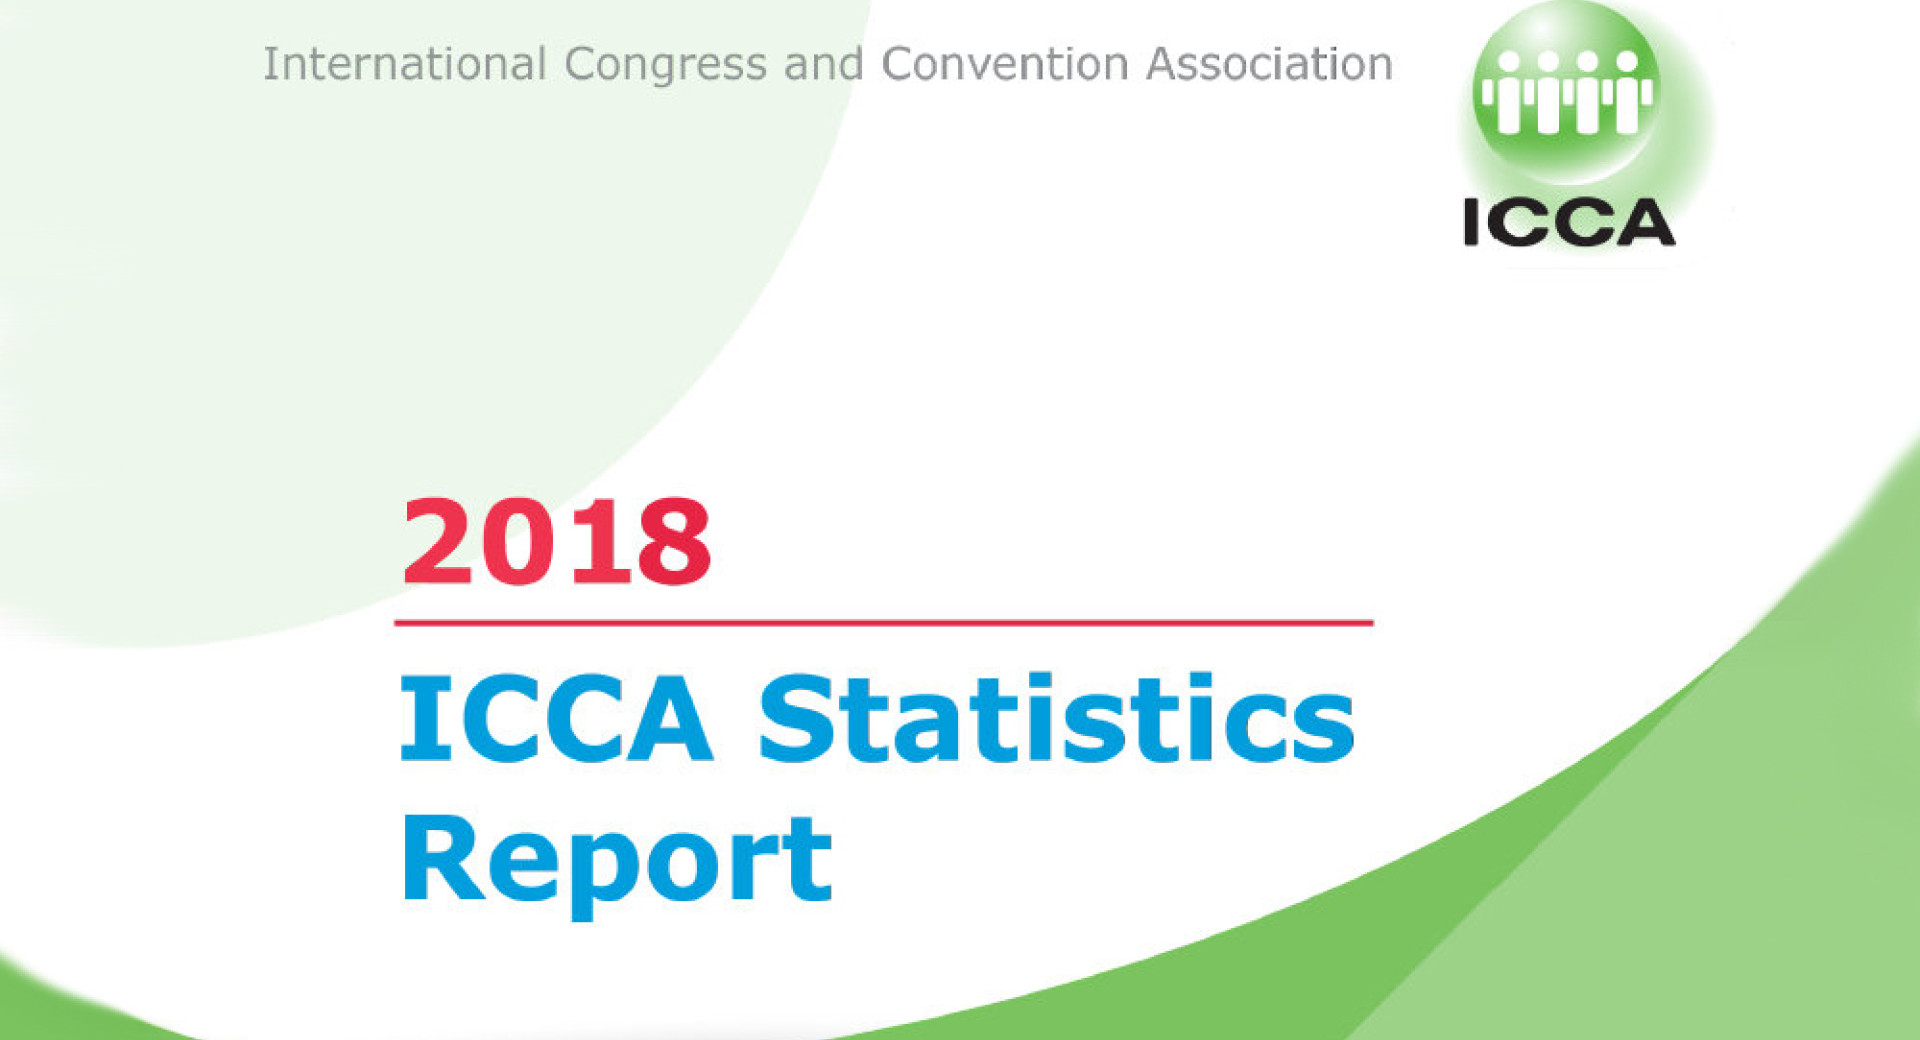 Prva stran poročila ICCA Statistics Report 2018.